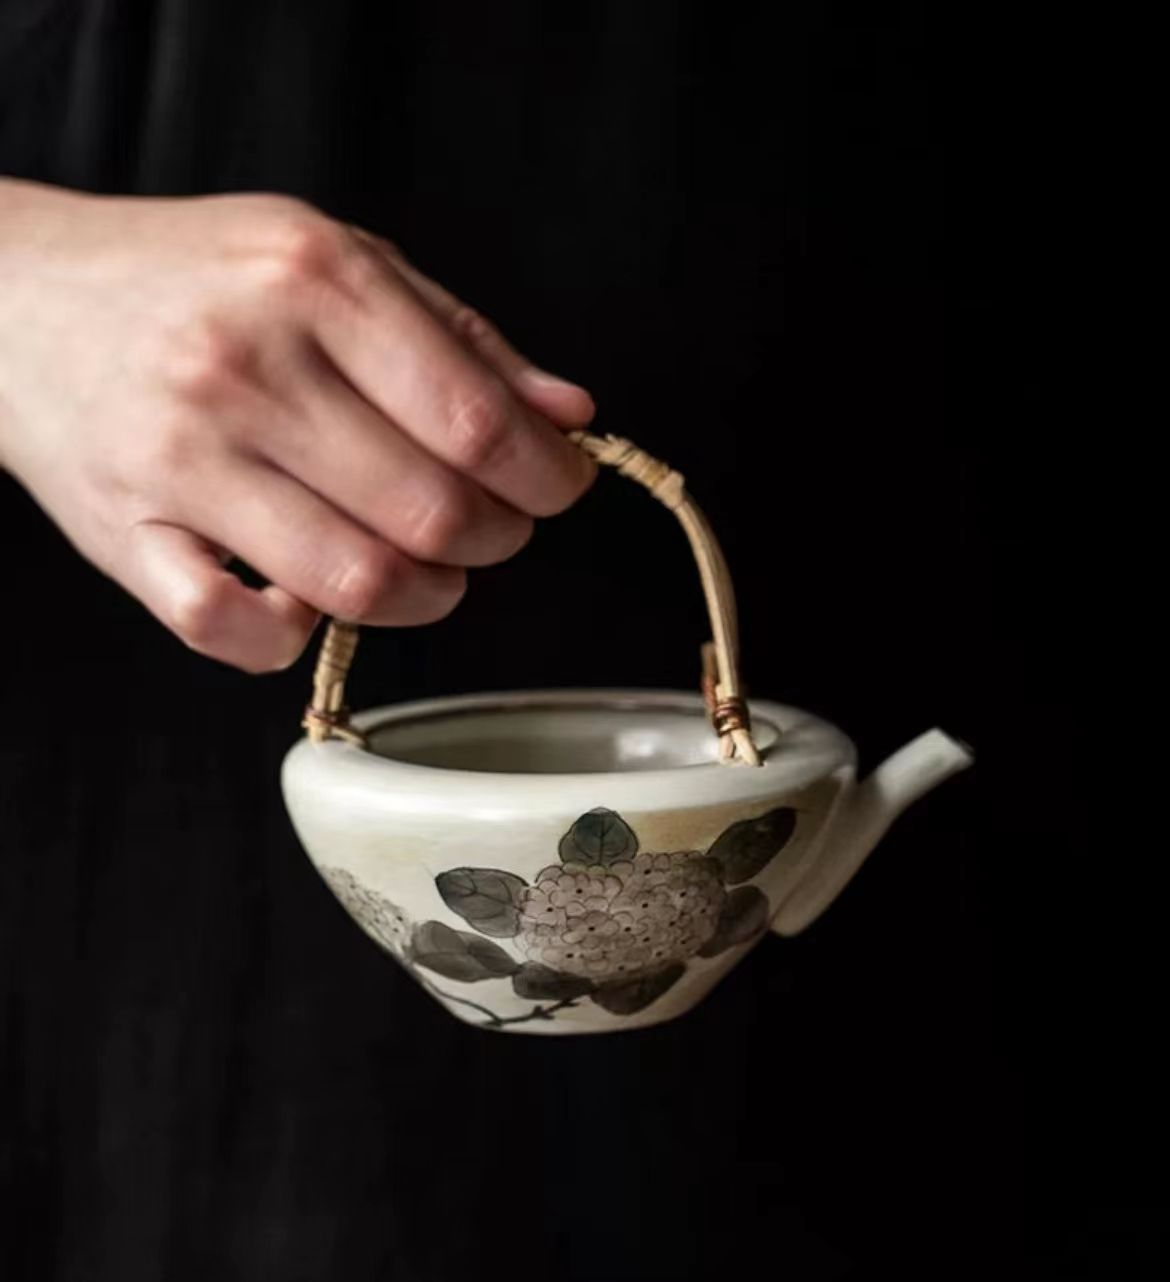 茶壷 180ml 茶器 常滑焼 ティーポット 煎茶道具 急須 シンプル おし ゃれ セラミックス 茶器 土瓶 陶器 お茶ポット ポット 贈り物 手作り  - メルカリ